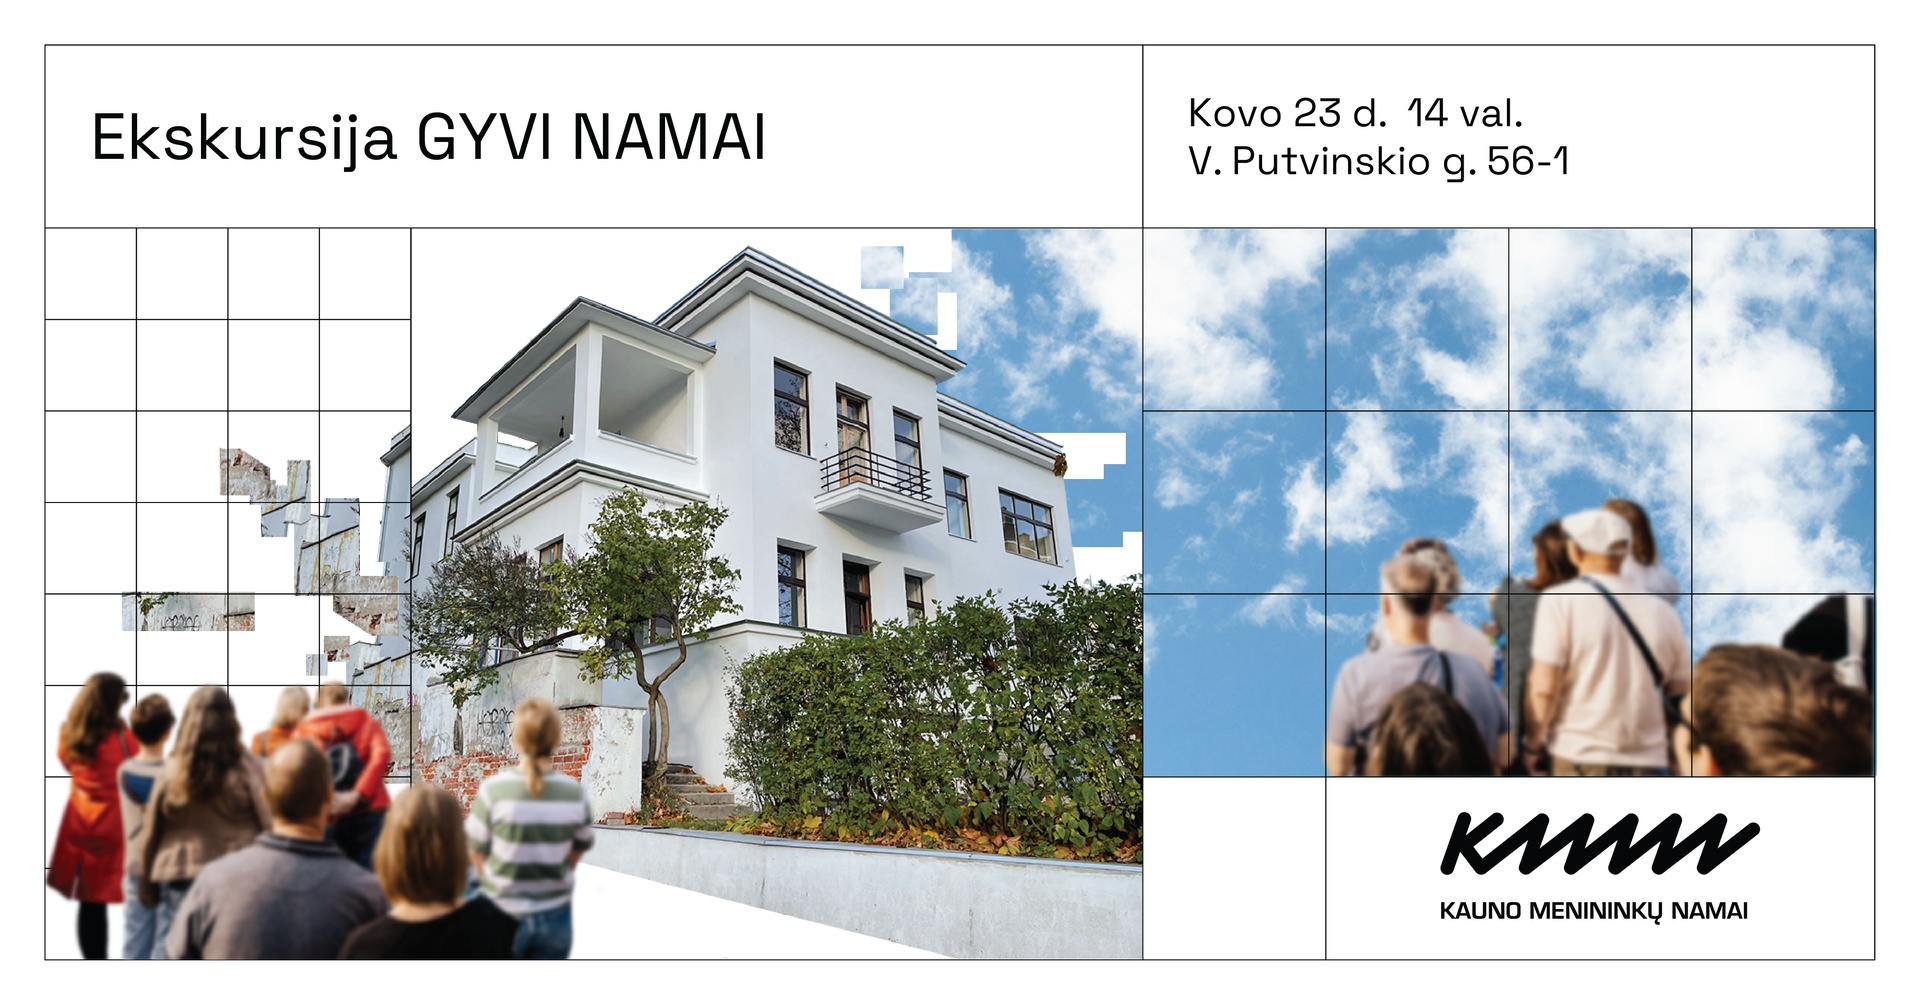 Ekskursijos „Gyvi namai” | Kovo 23 d. 14 val. | Kauno menininkų namai